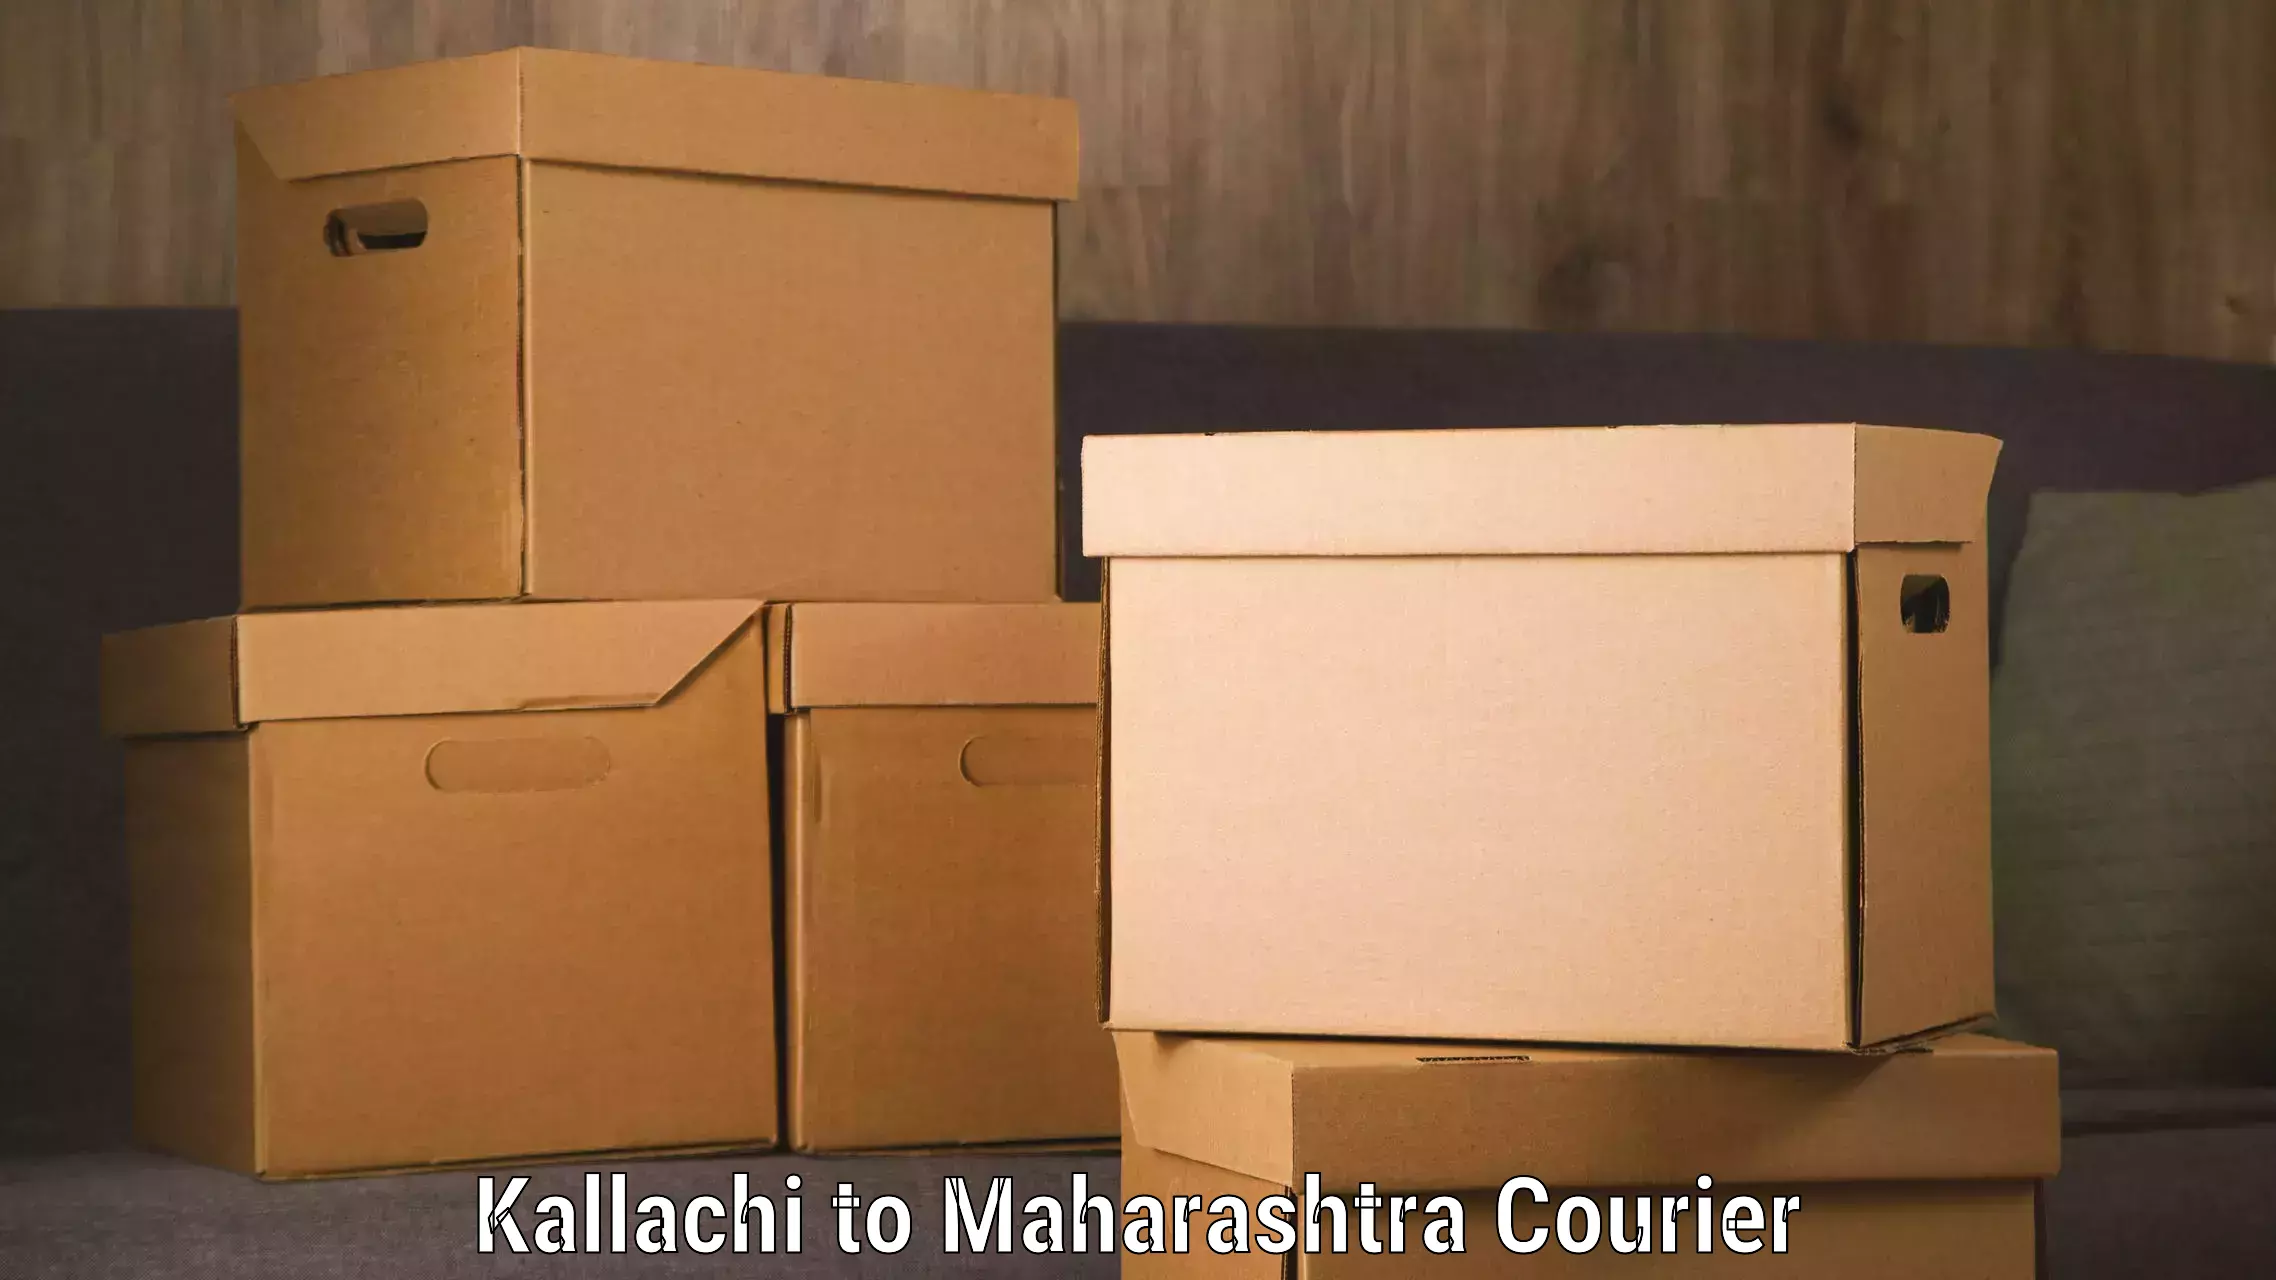 Reliable delivery network Kallachi to Nashik